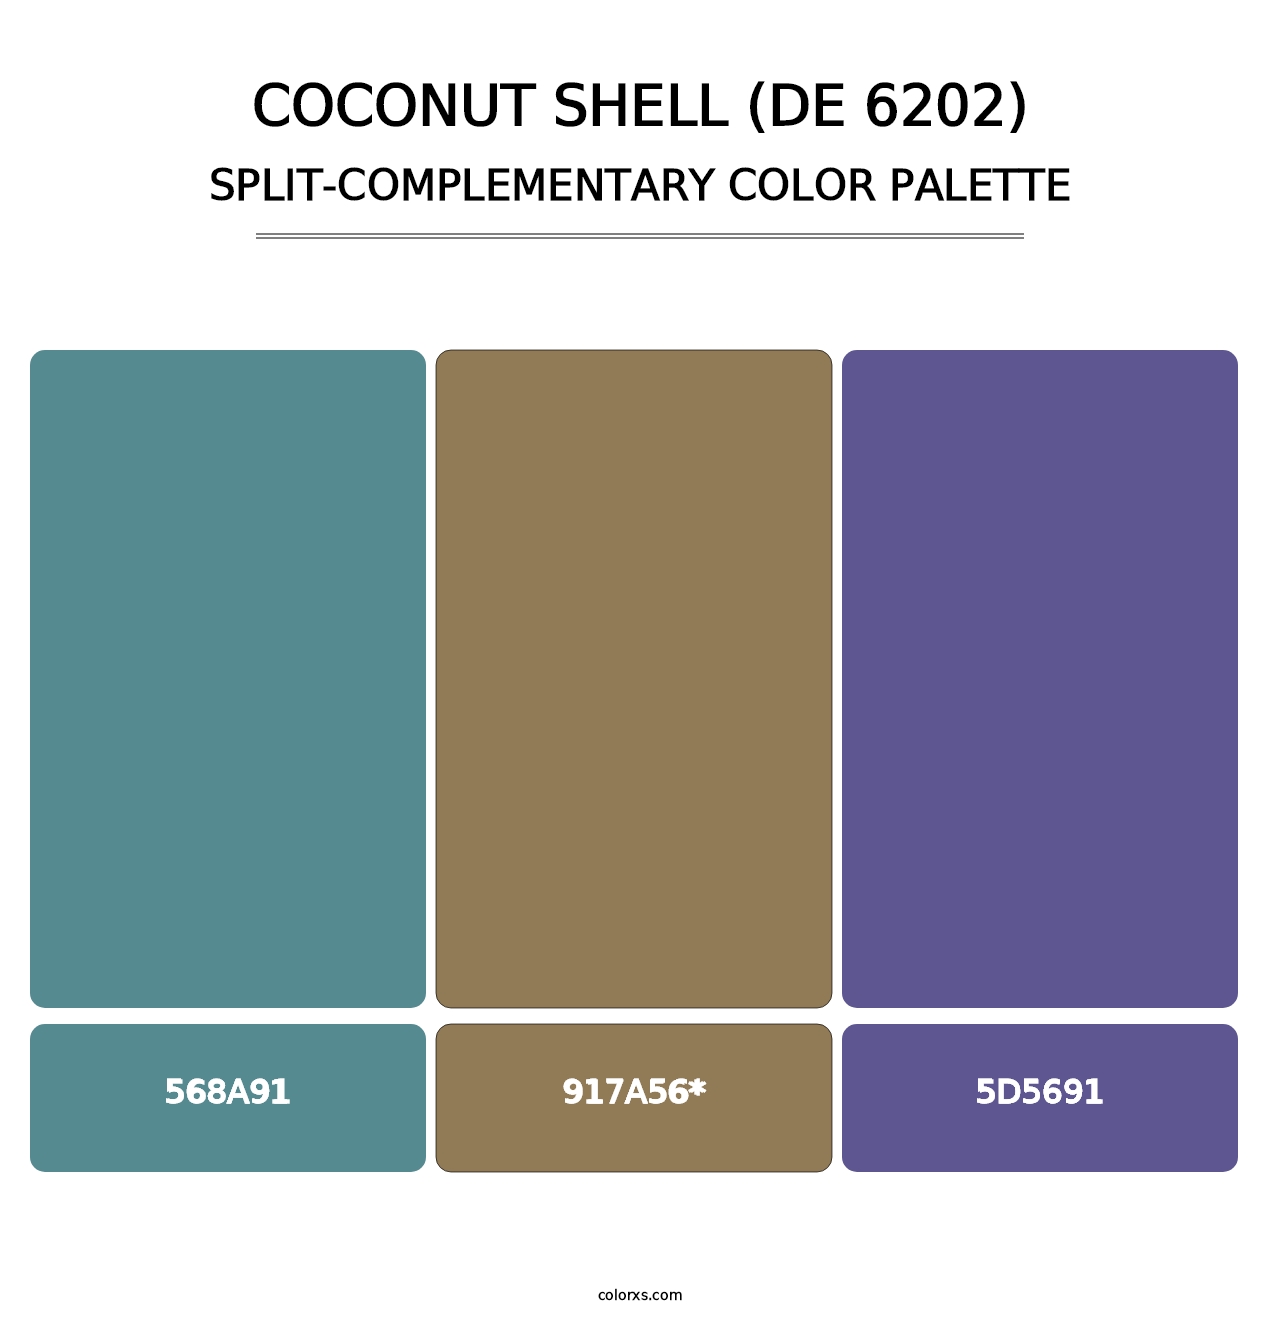 Coconut Shell (DE 6202) - Split-Complementary Color Palette